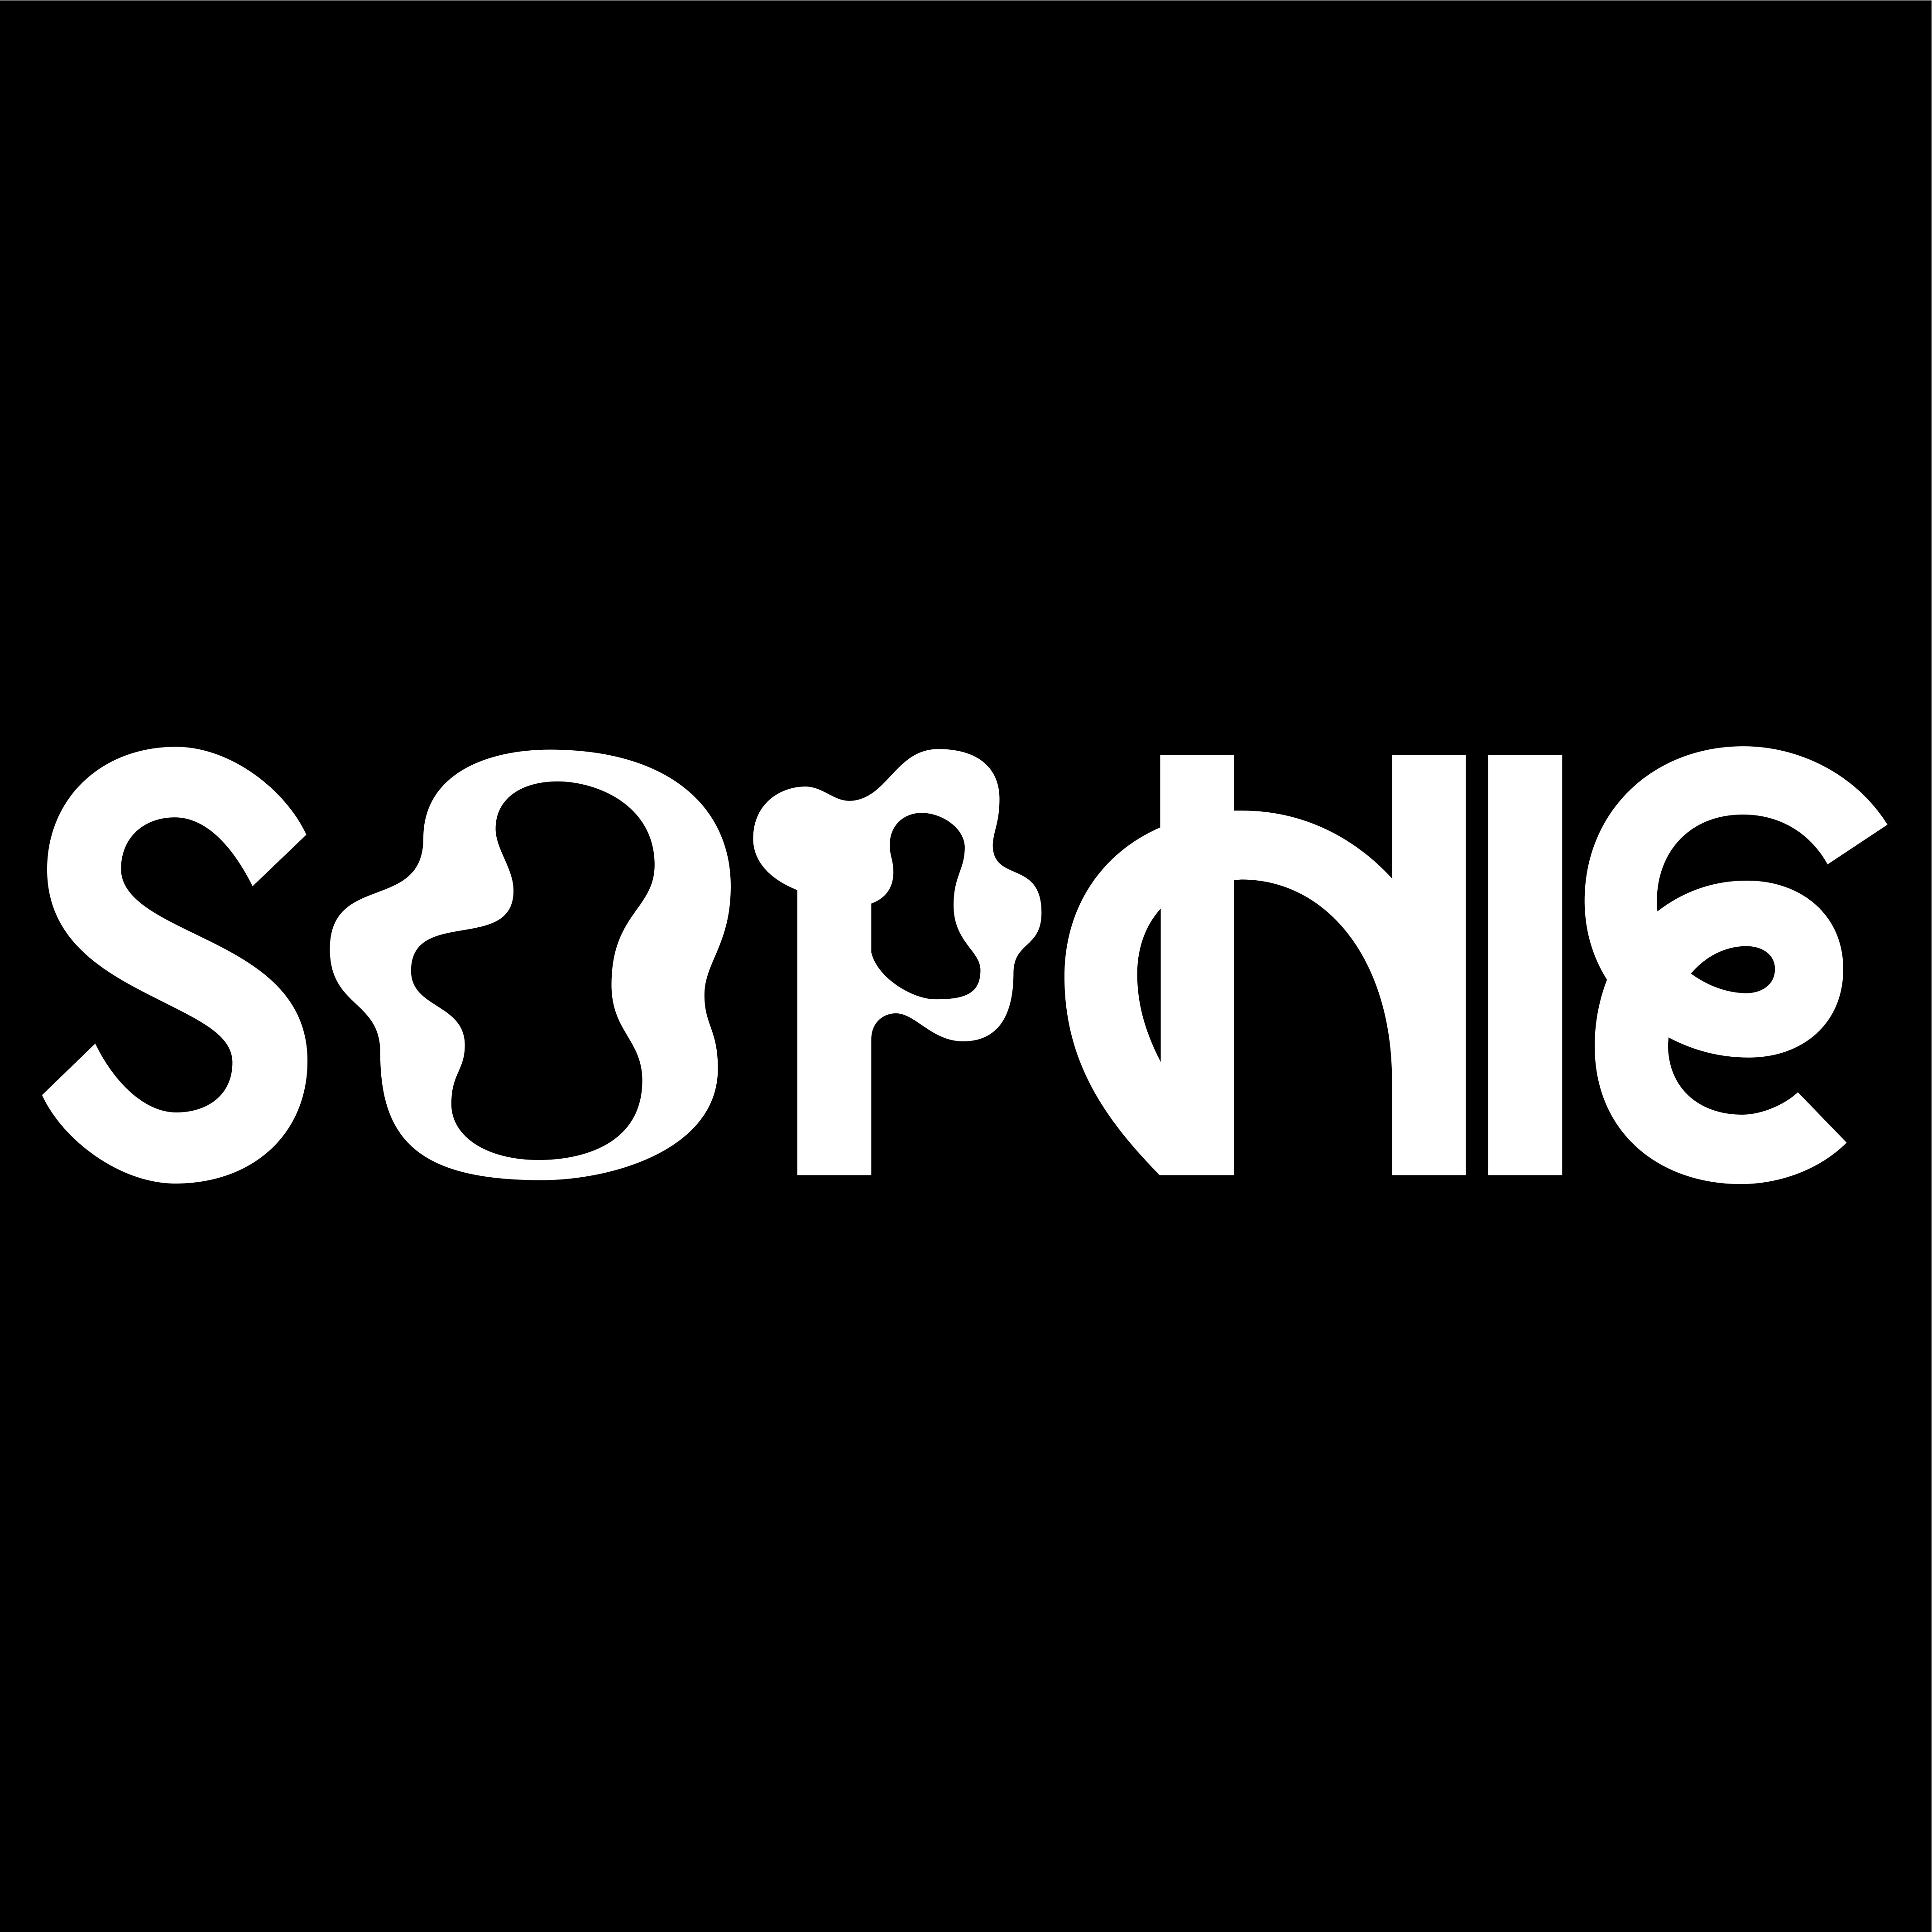 Soo dejiso FMM: SOPHIE - EEEHHH/Nothing More To Say